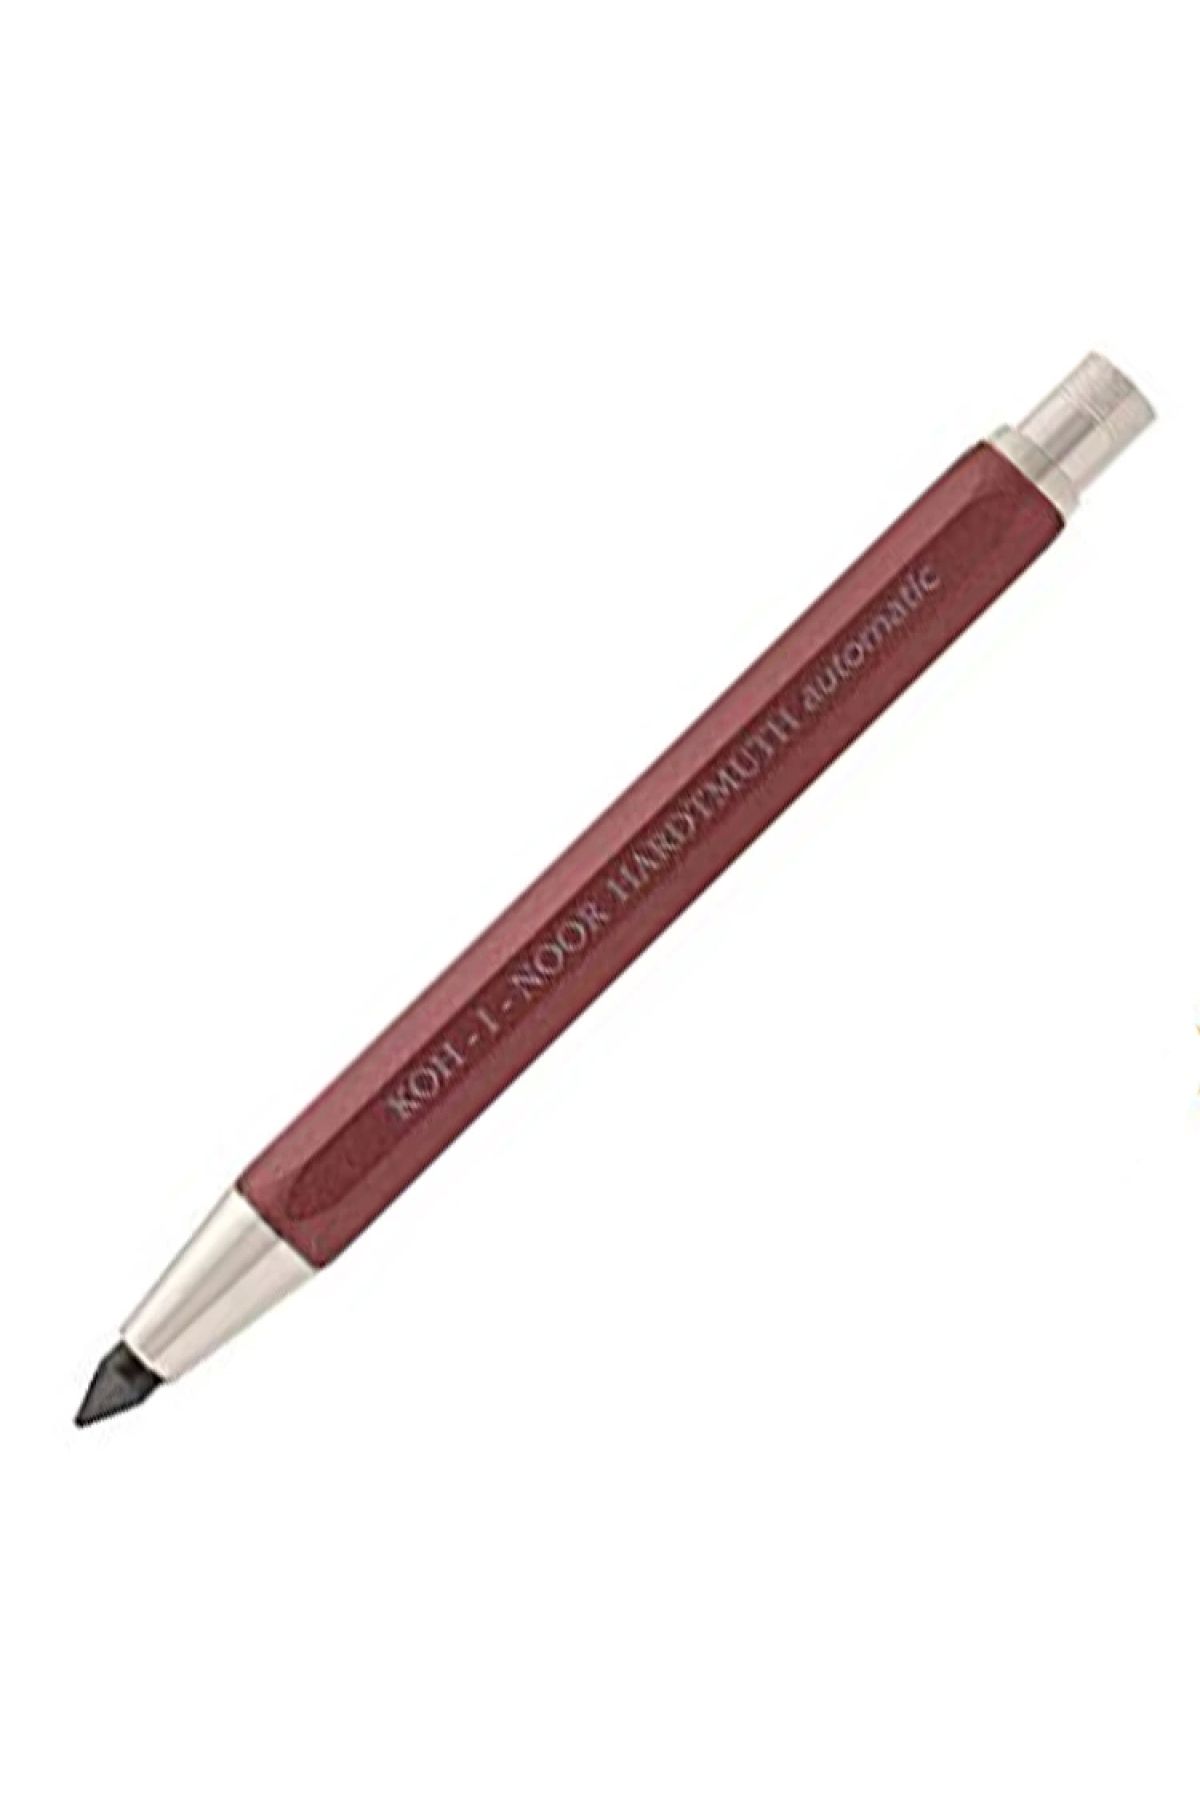 Kohinoor Koh-ı Noor Mechanical Pencil 5640 5.6